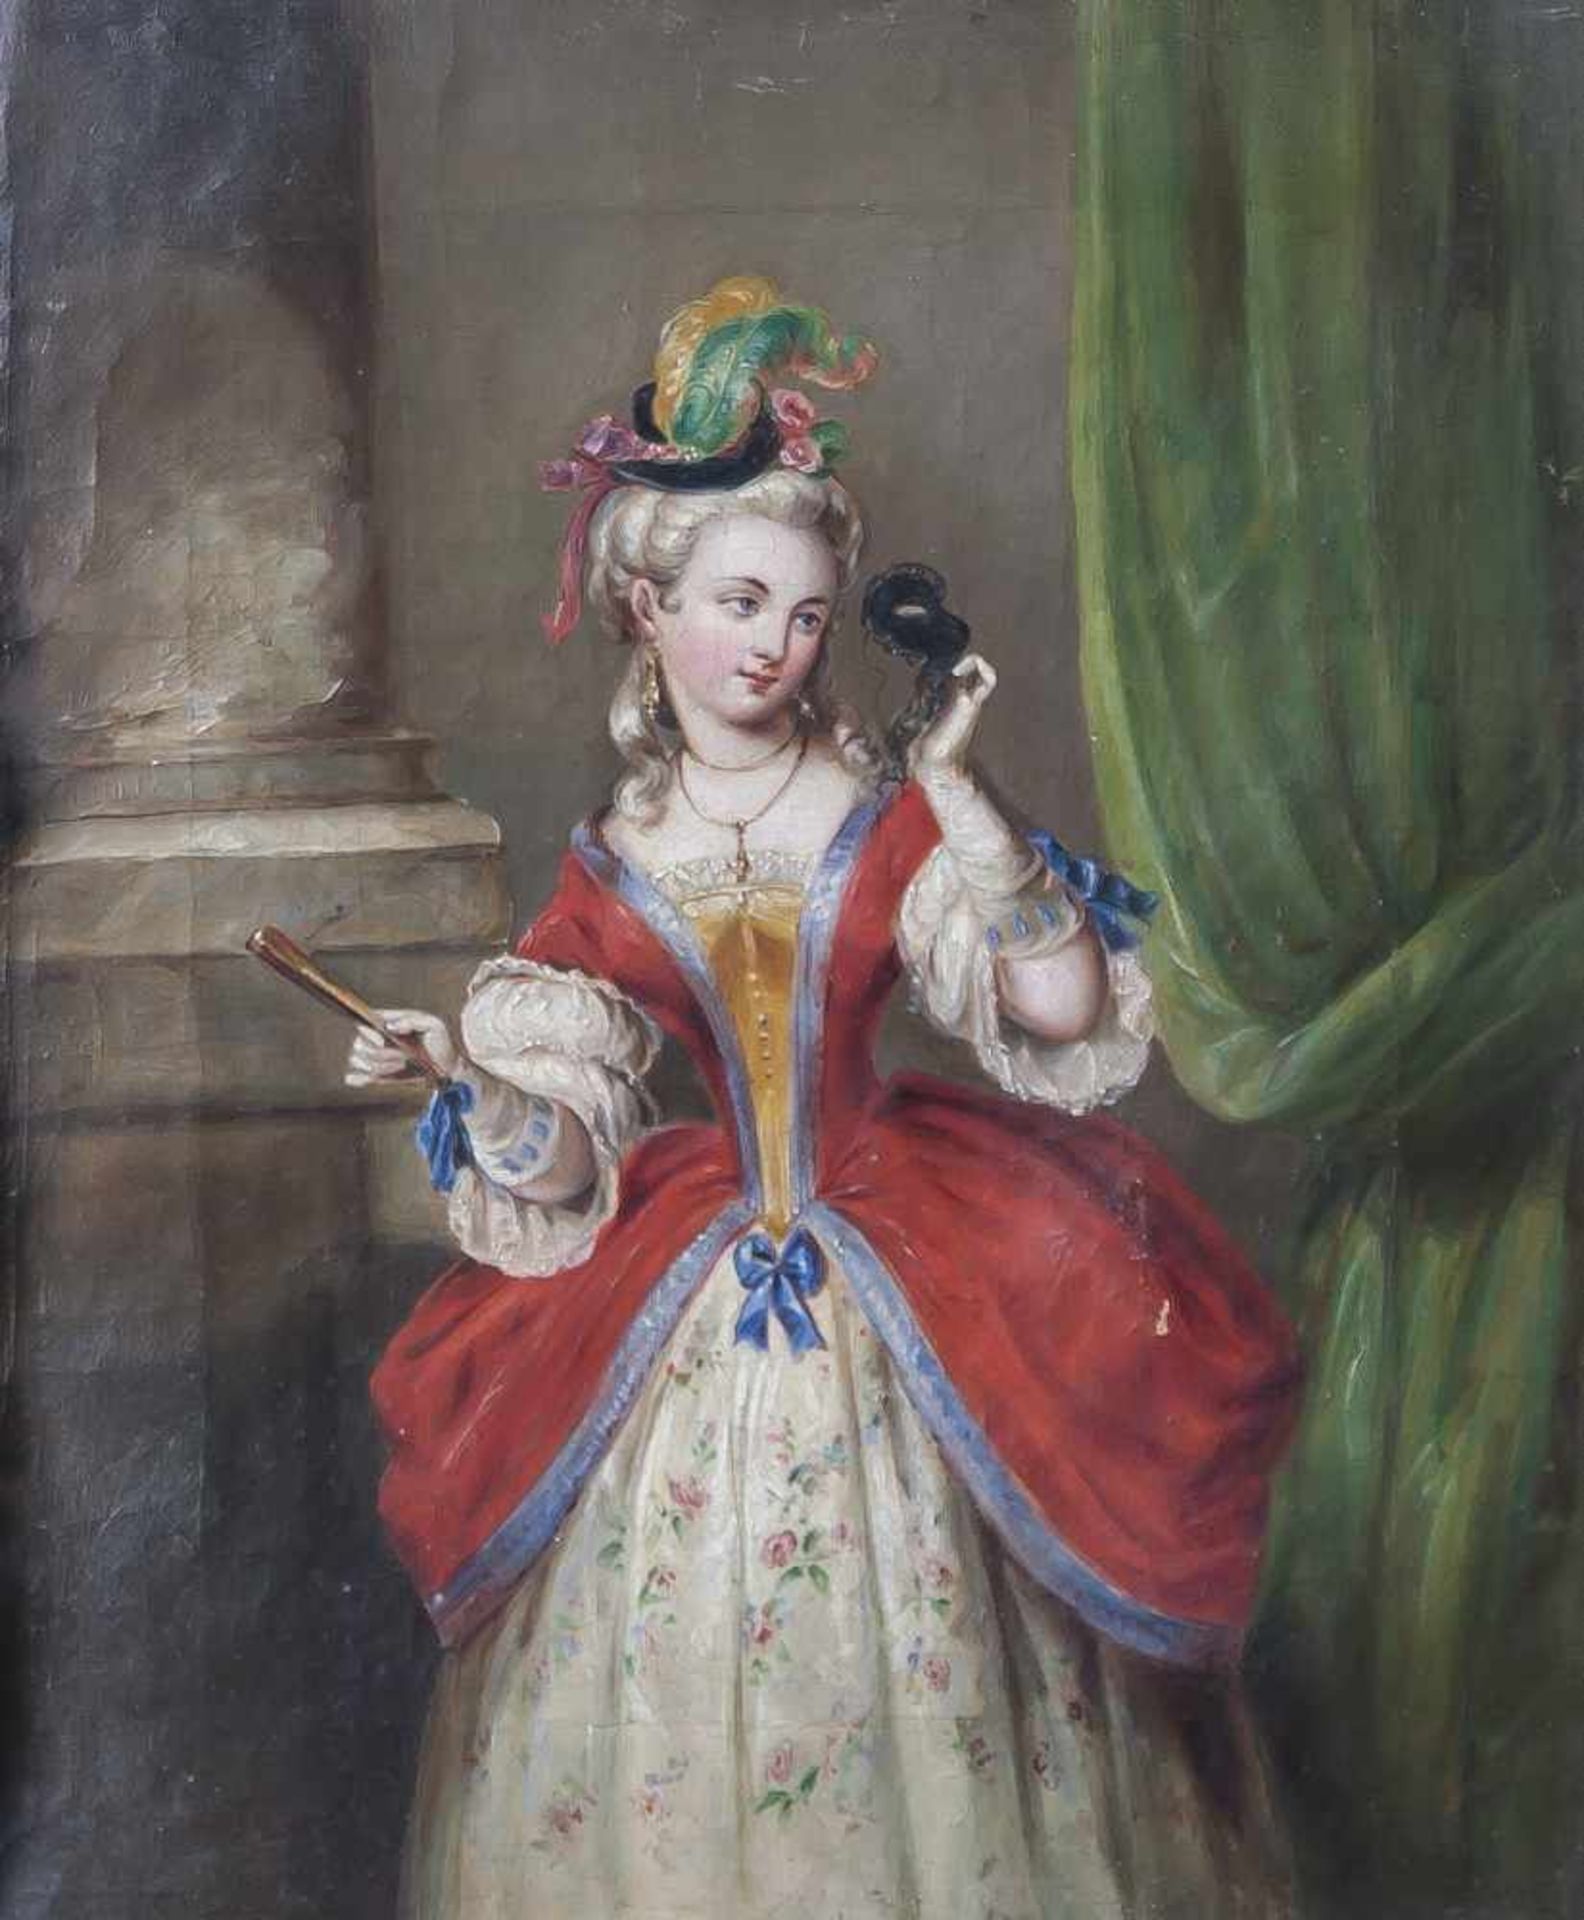 Unbekannter Künstler (18./19. Jahrhundert), Italien, Porträt einer Dame, Öl/Lw, junge Dame im